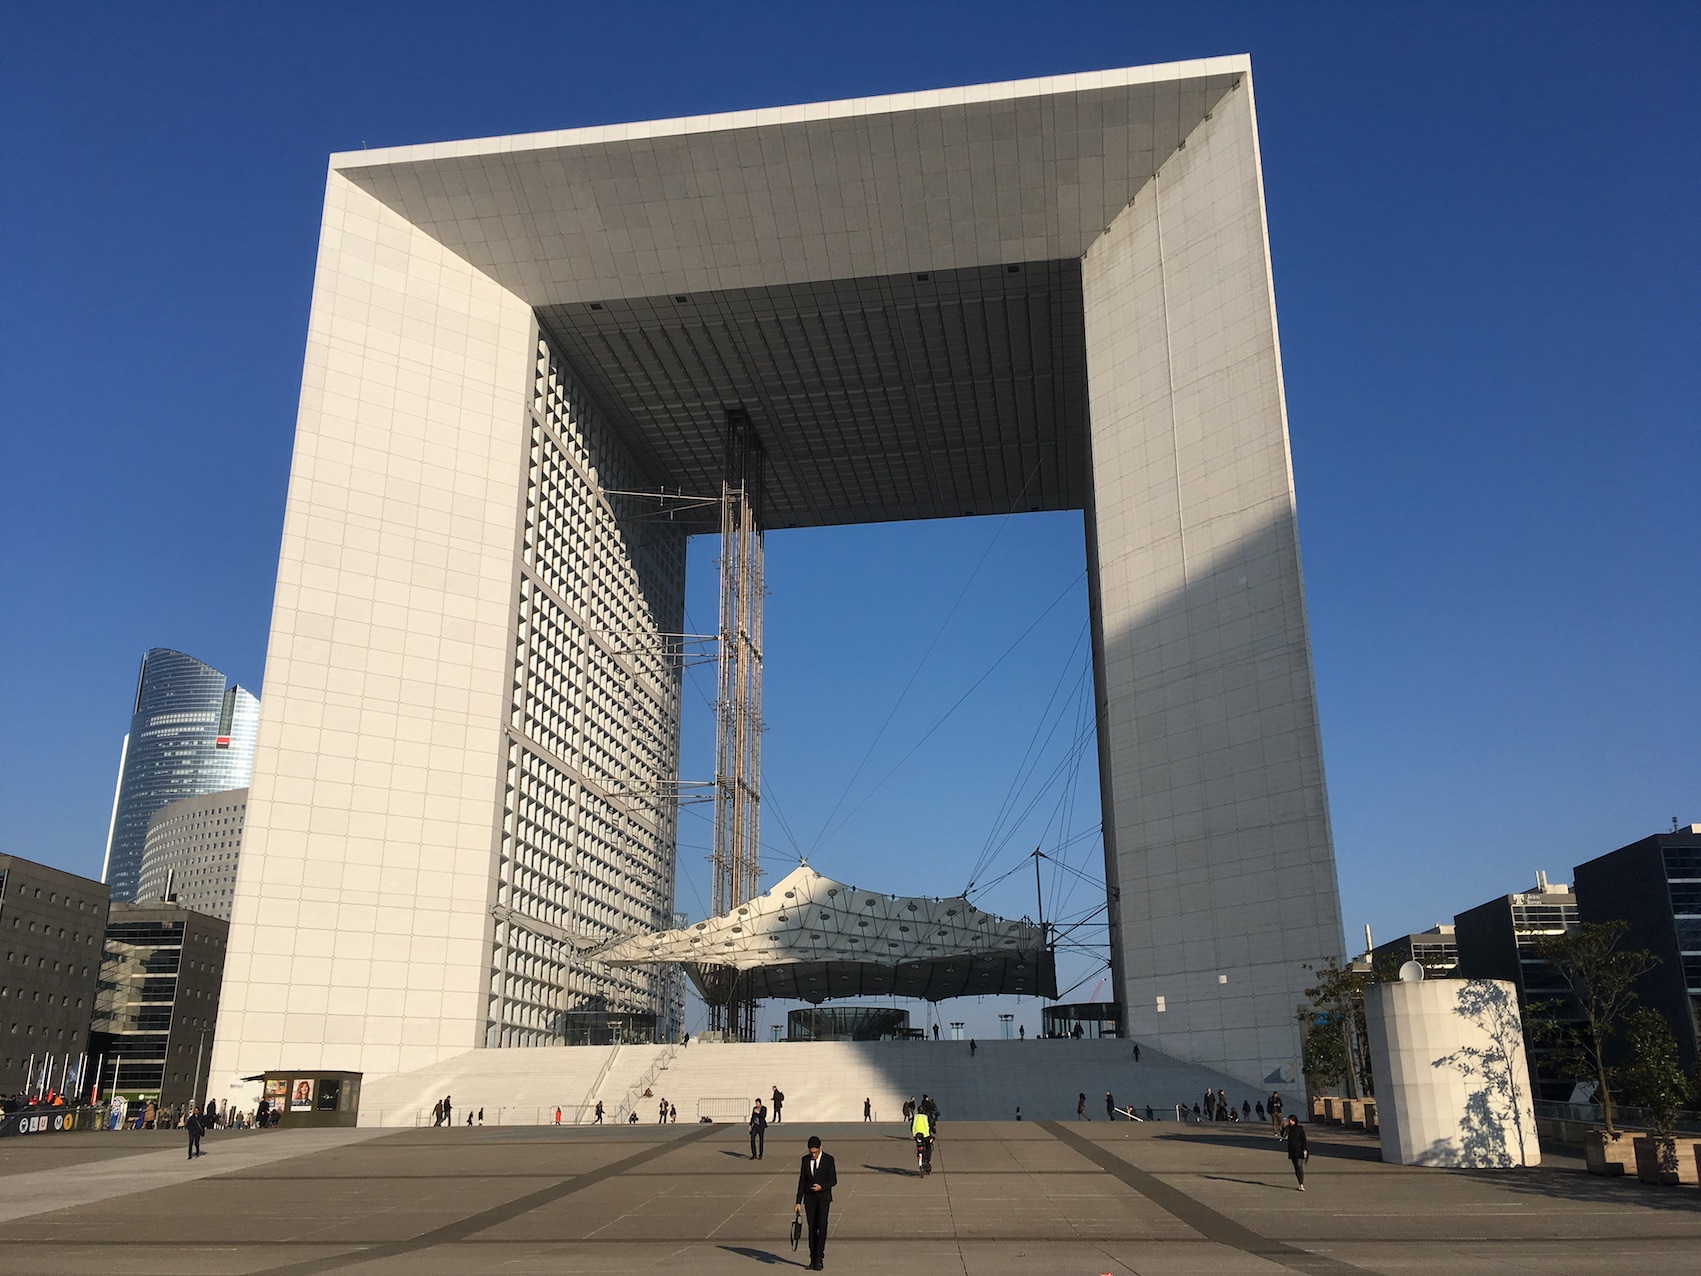 La paroi sud de La Grande Arche de La Défense rénovée